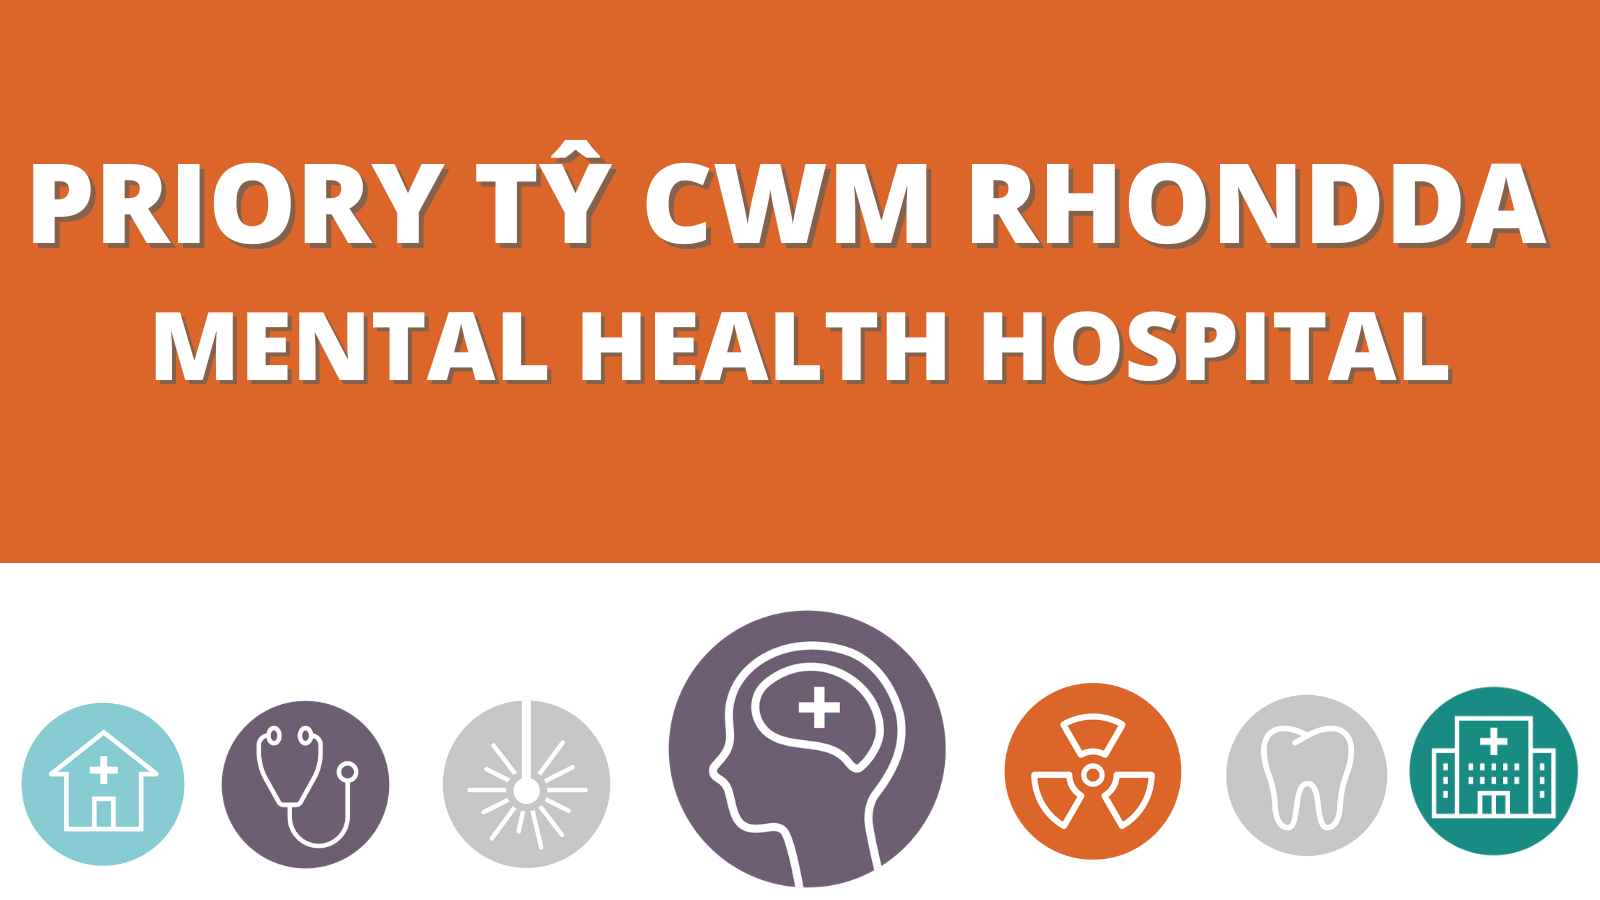 Priory Tŷ Cwm Rhondda - Mental health hospital